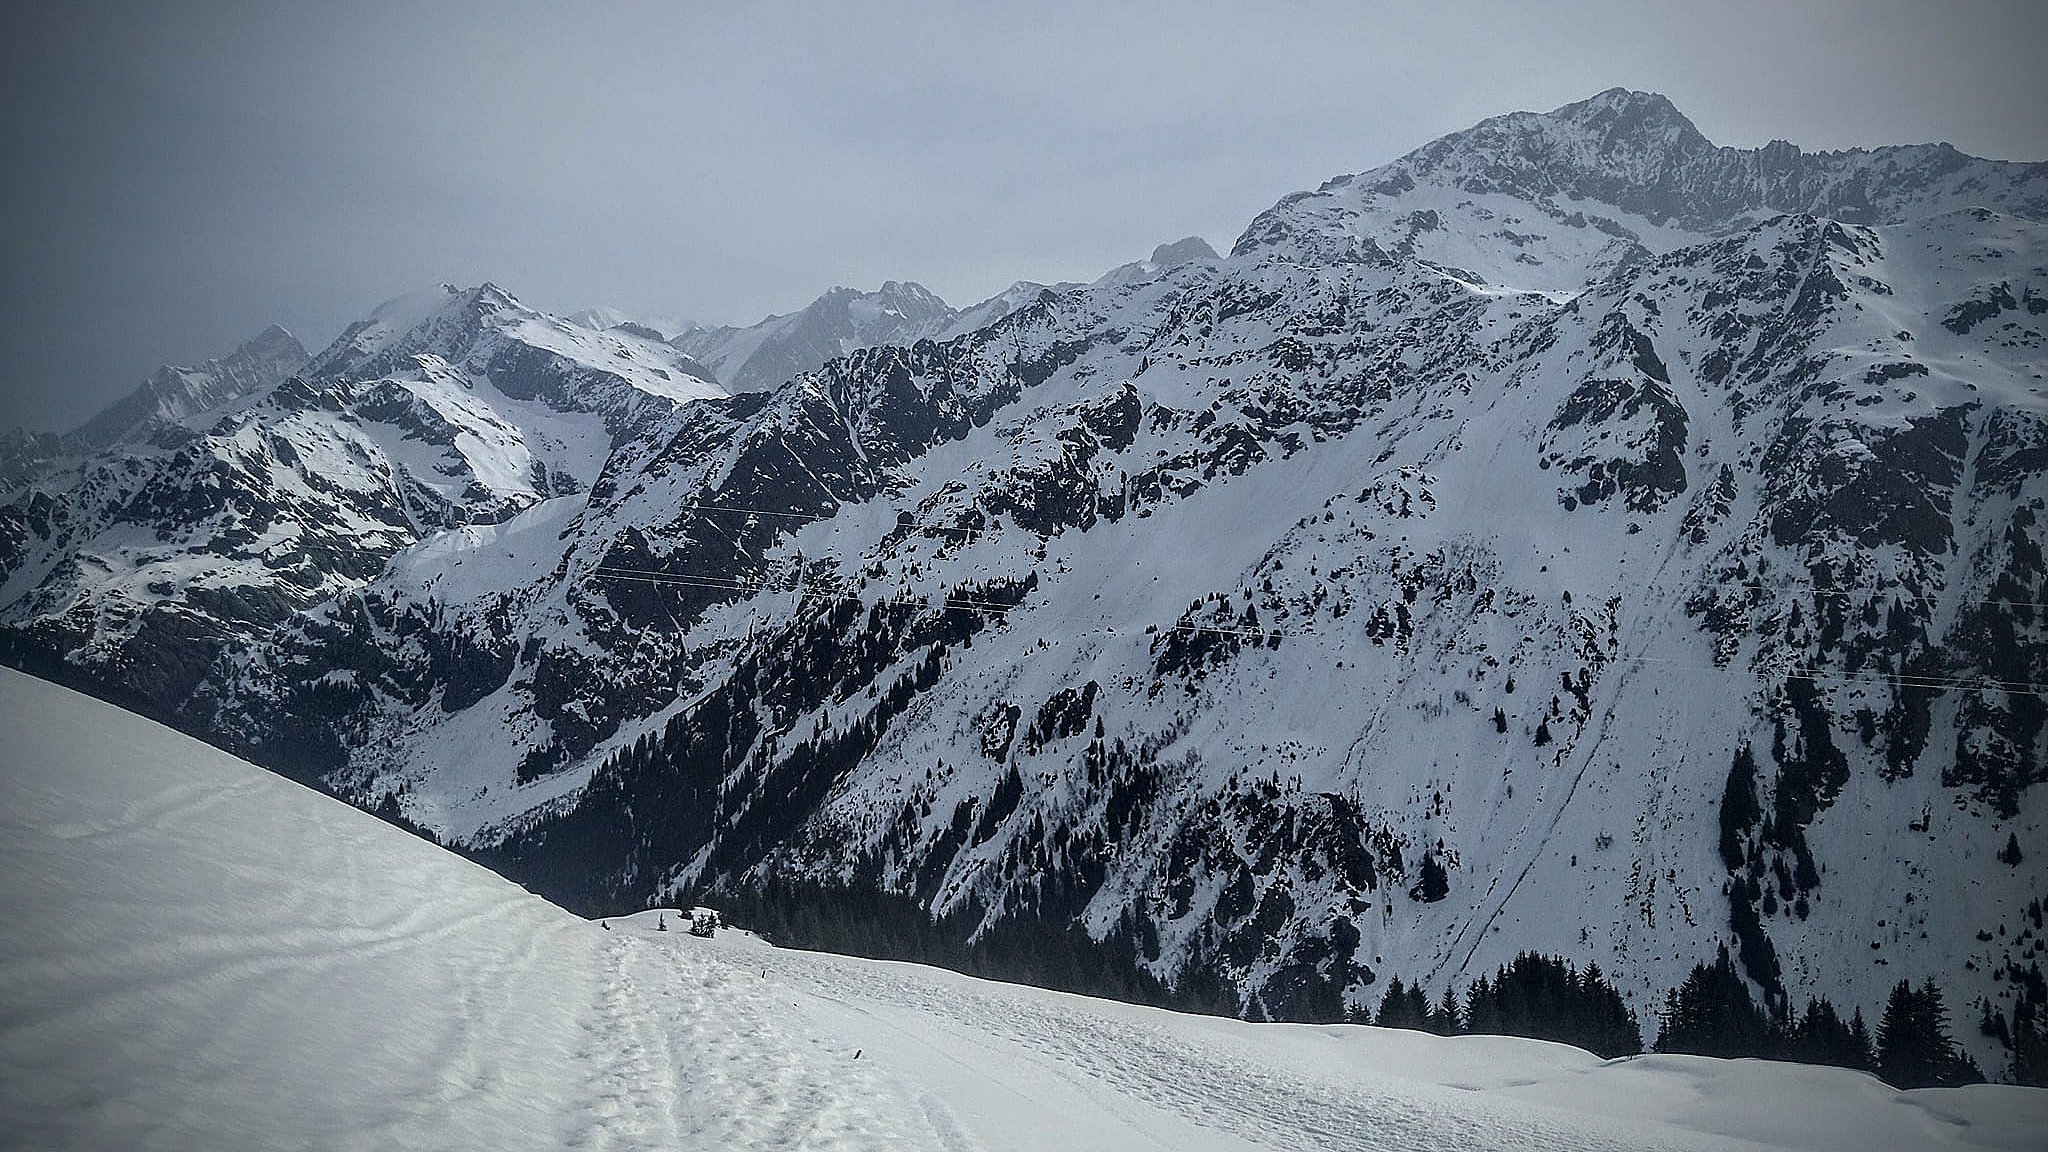 Selvom Mont Blanc er flot på billeder, var det den hårdeste passage på vandringen indtil videre.